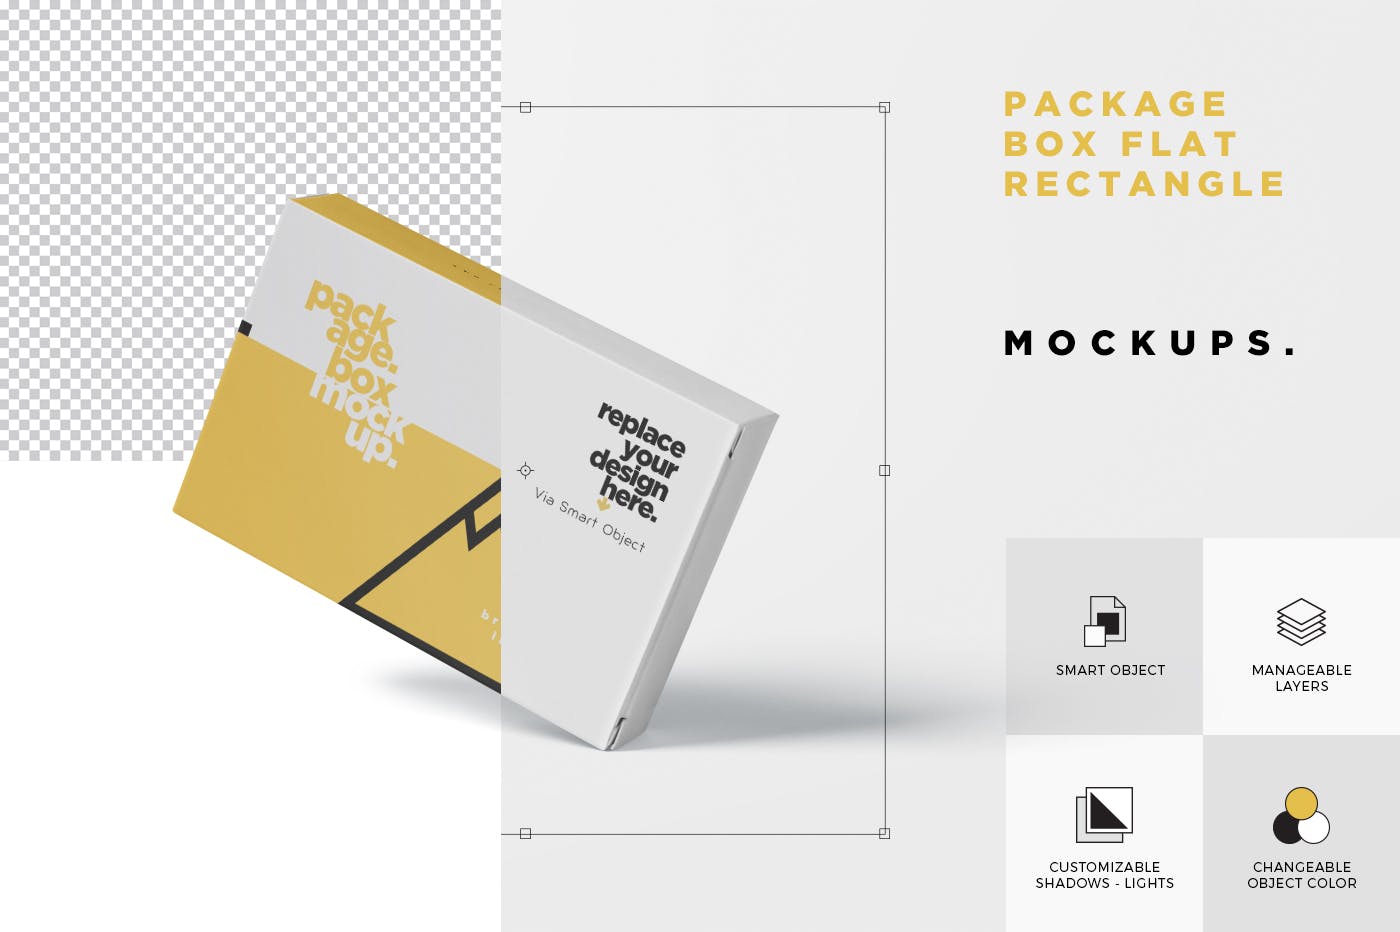 扑克牌大小扁平包装纸盒外观设计素材中国精选模板 Package Box Mock-Up – Wide – Flat Rectangle Shape插图(6)